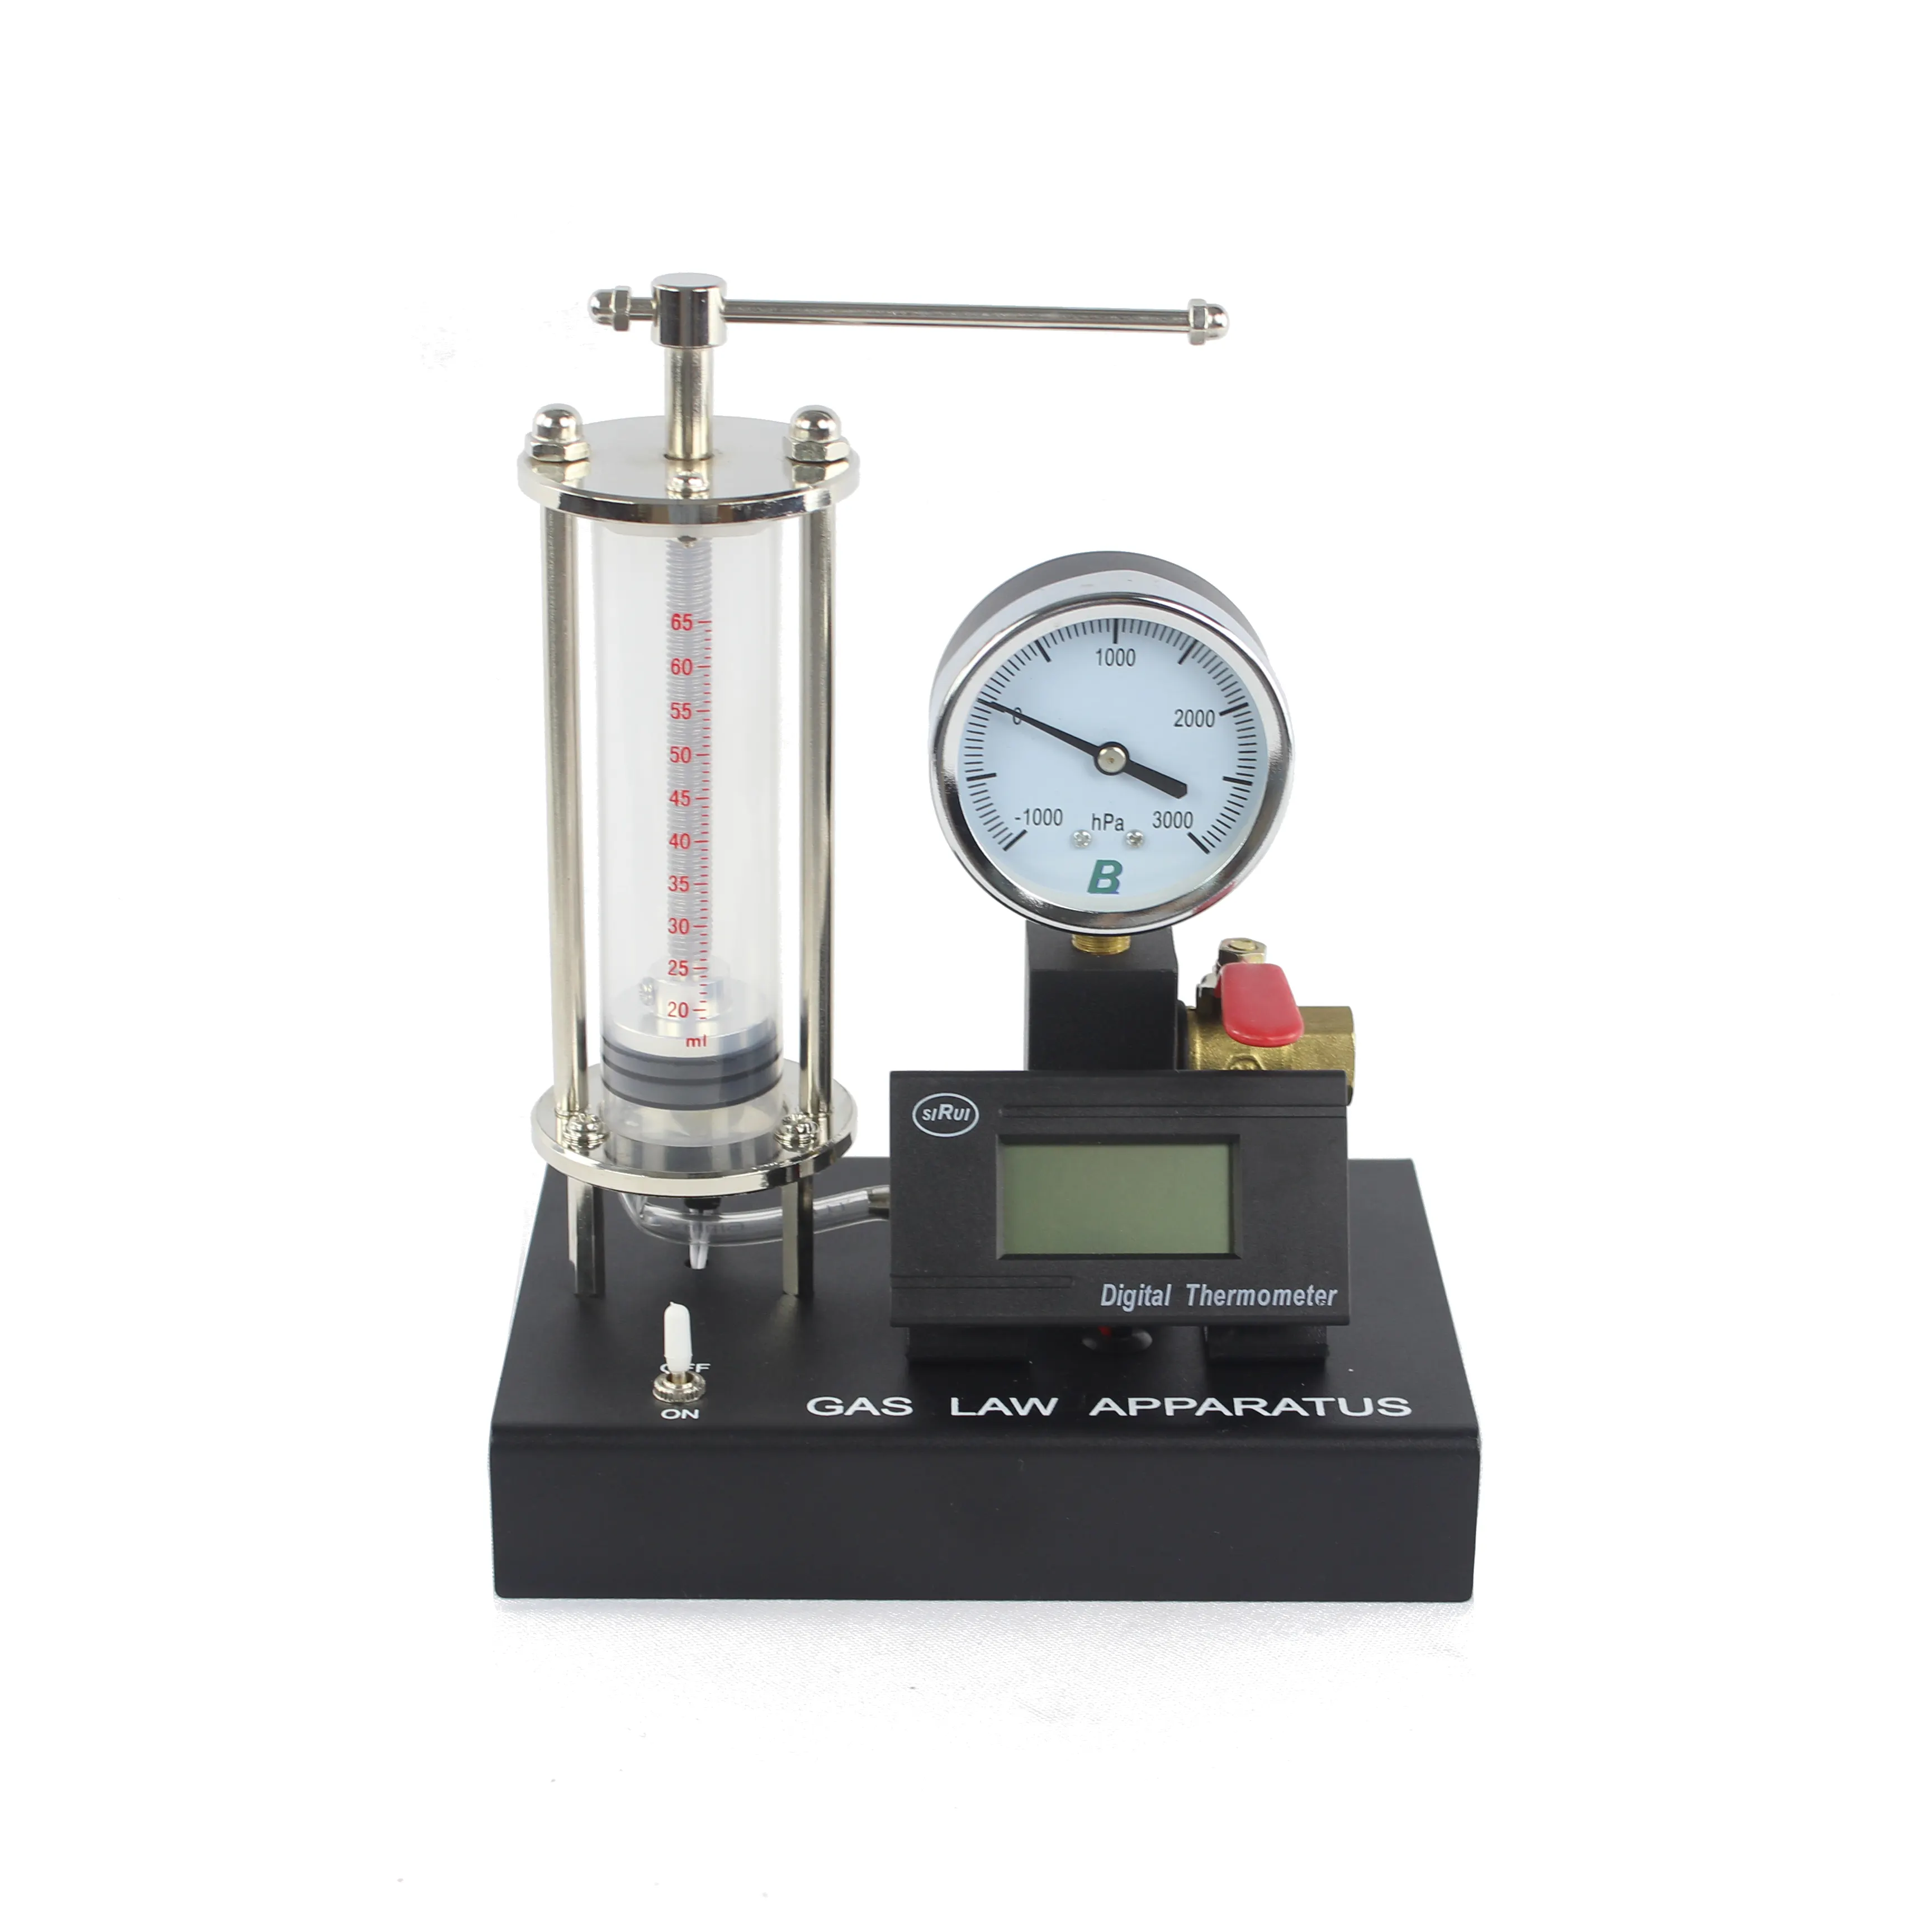 Boyle-Aparato de ley de gas con manómetro